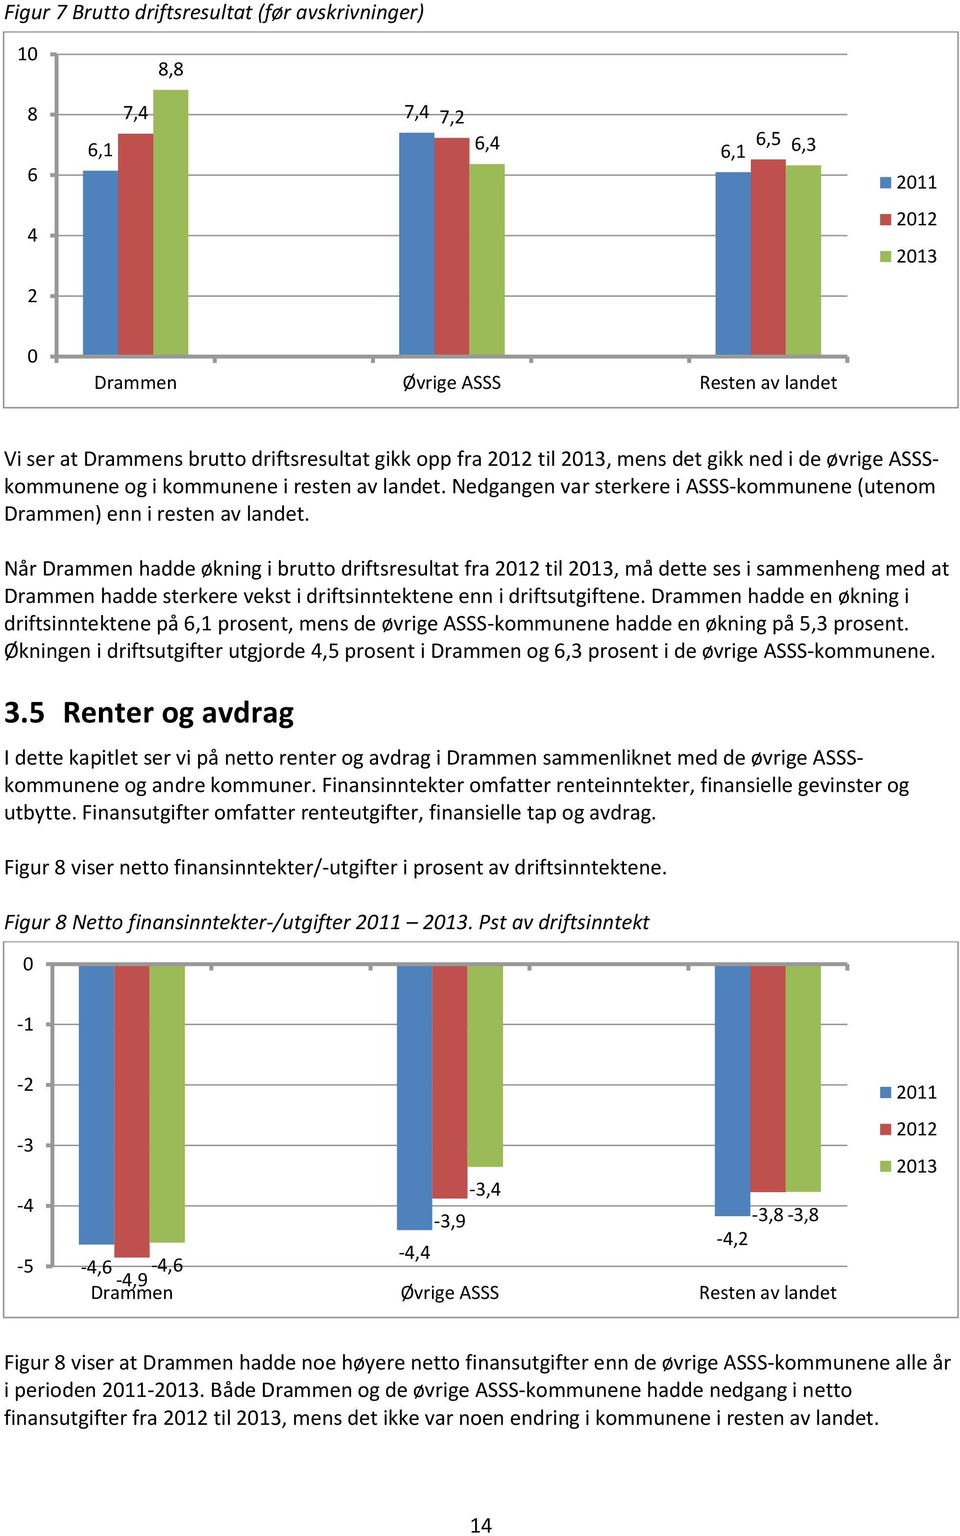 Når Drammen hadde økning i brutto driftsresultat fra 2012 til 2013, må dette ses i sammenheng med at Drammen hadde sterkere vekst i driftsinntektene enn i driftsutgiftene.